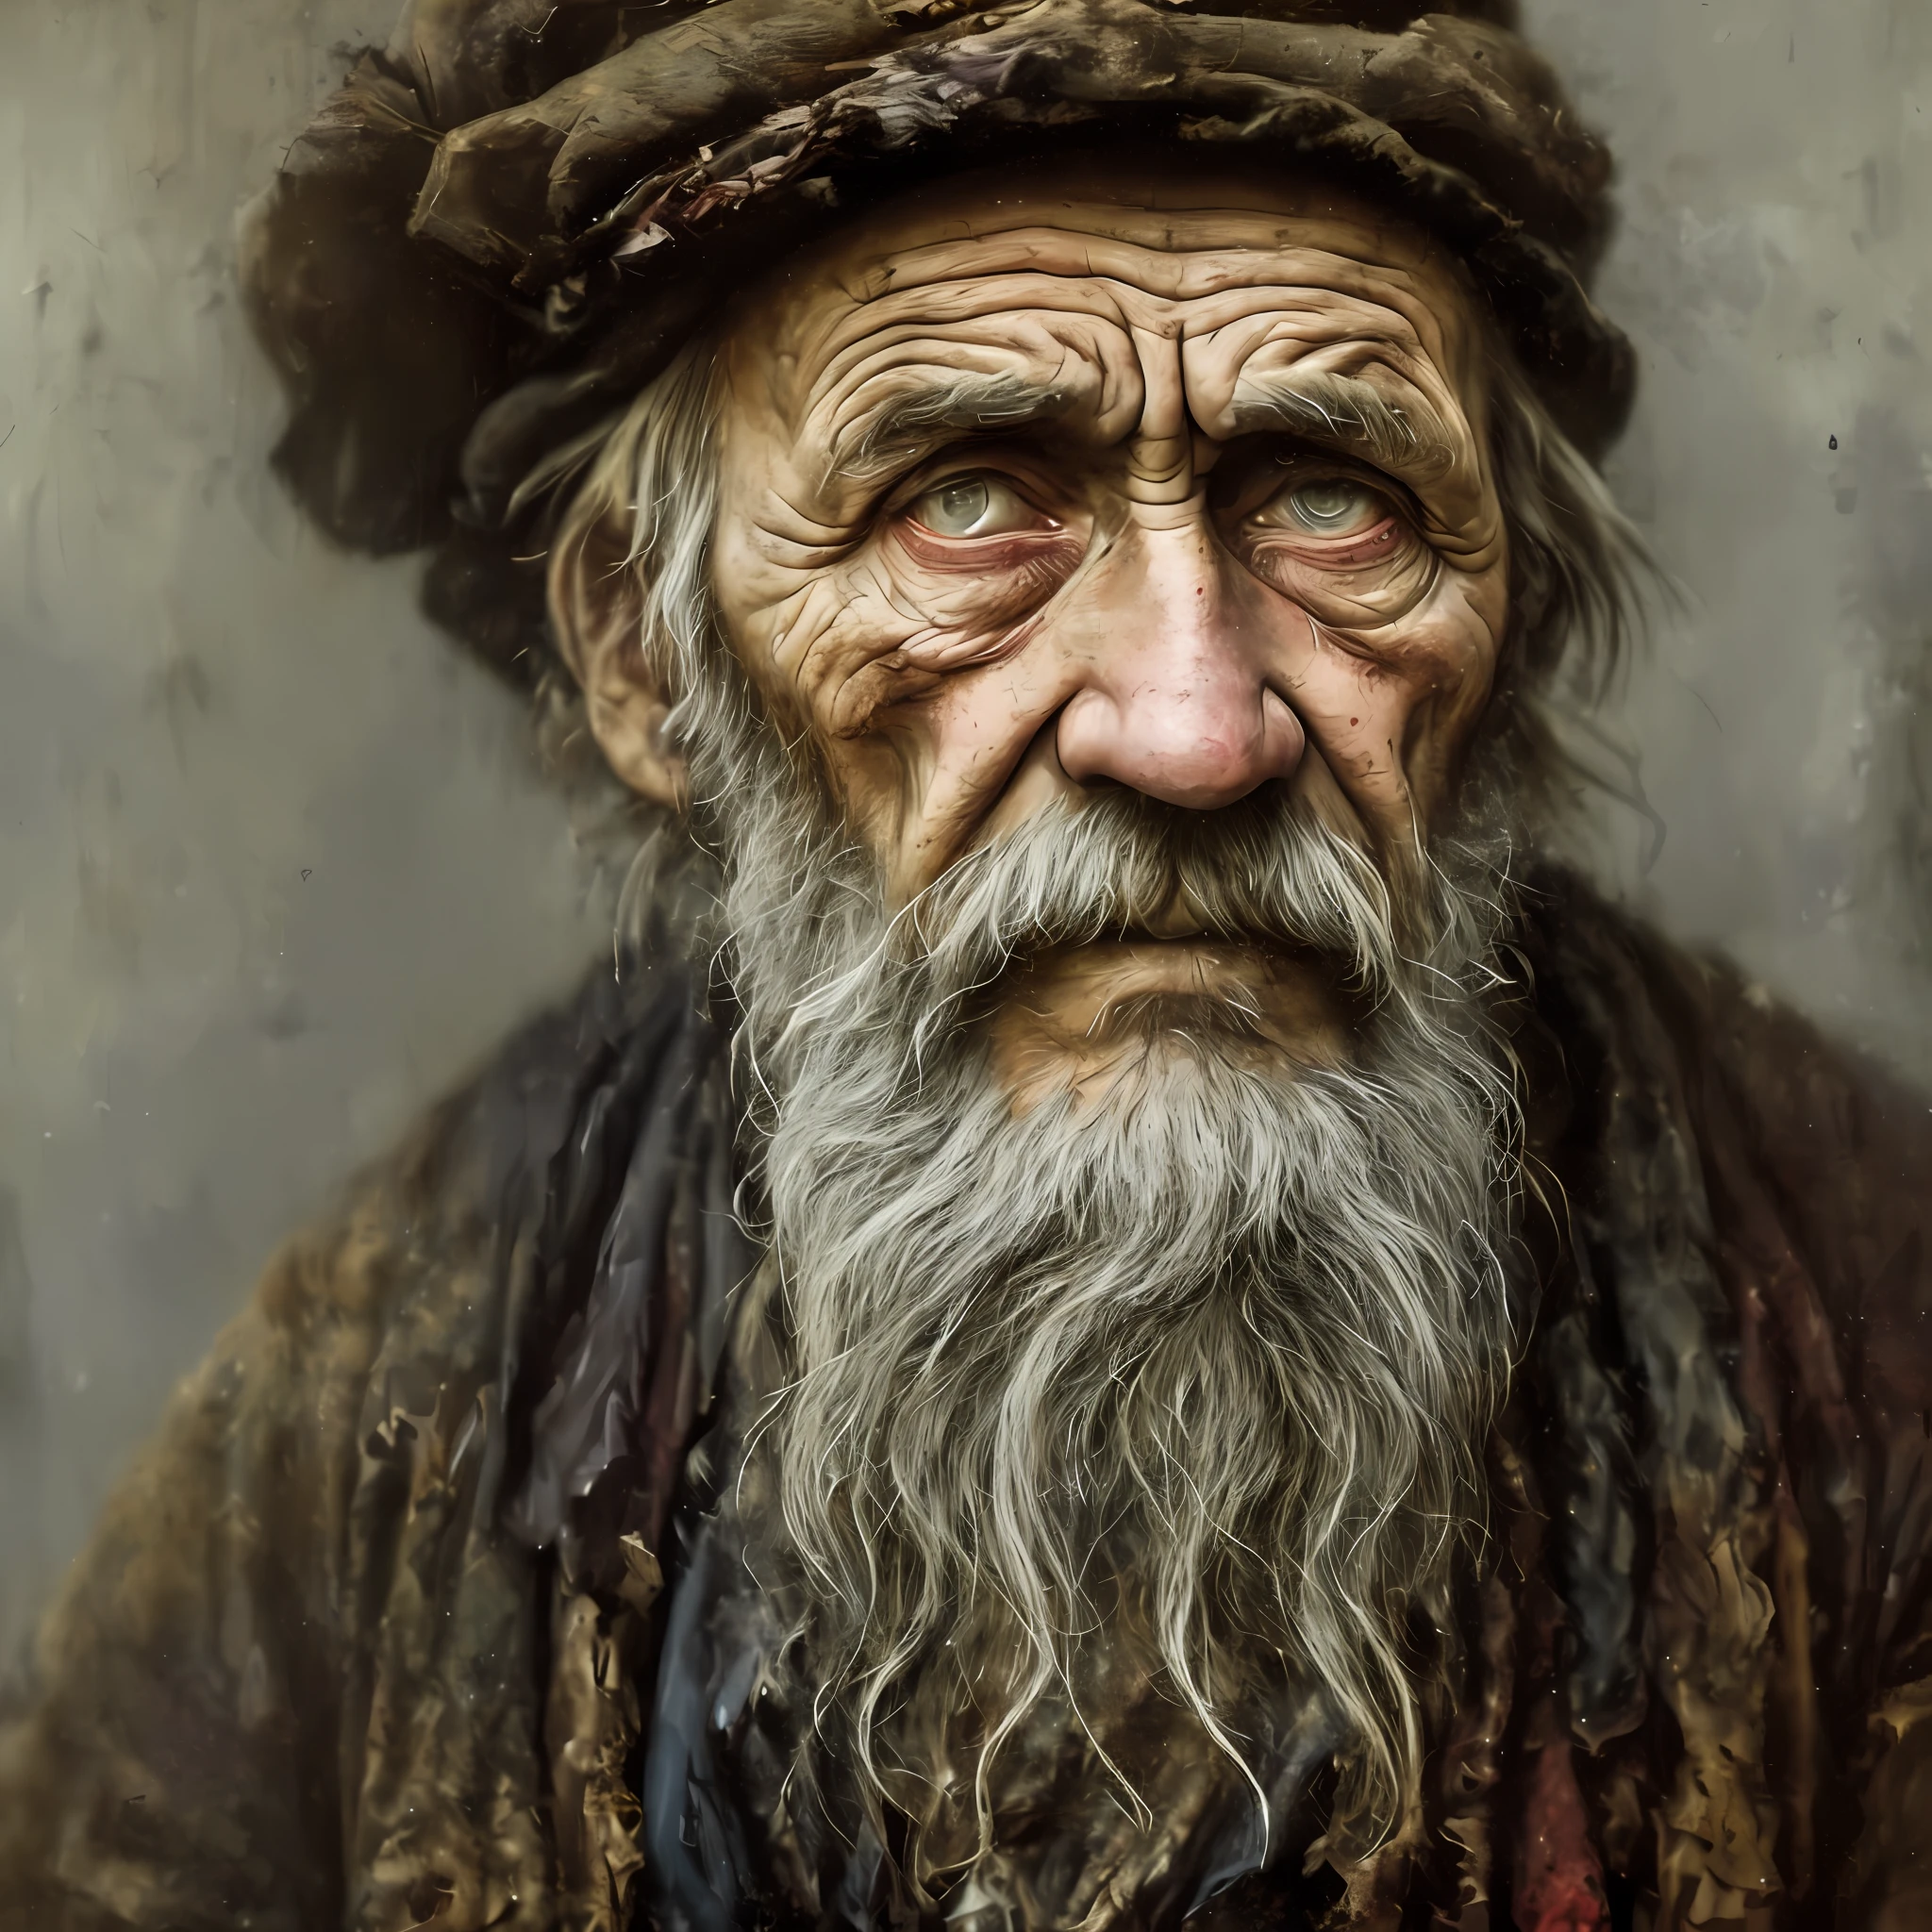 衣衫褴褛的 1800 年俄罗斯贫穷老工人的肖像, ((极度疲劳 )), 年龄带来的皱纹, 概念艺术, 油画棒画 , 忧郁的灰色 , 坚韧不拔, 凌乱的风格 Alexey Savrasov 的风格, 伊万·希什金, 伊利亚·列宾, (卡通渲染:1.2), 二维, (油画:1.2) 非常详细